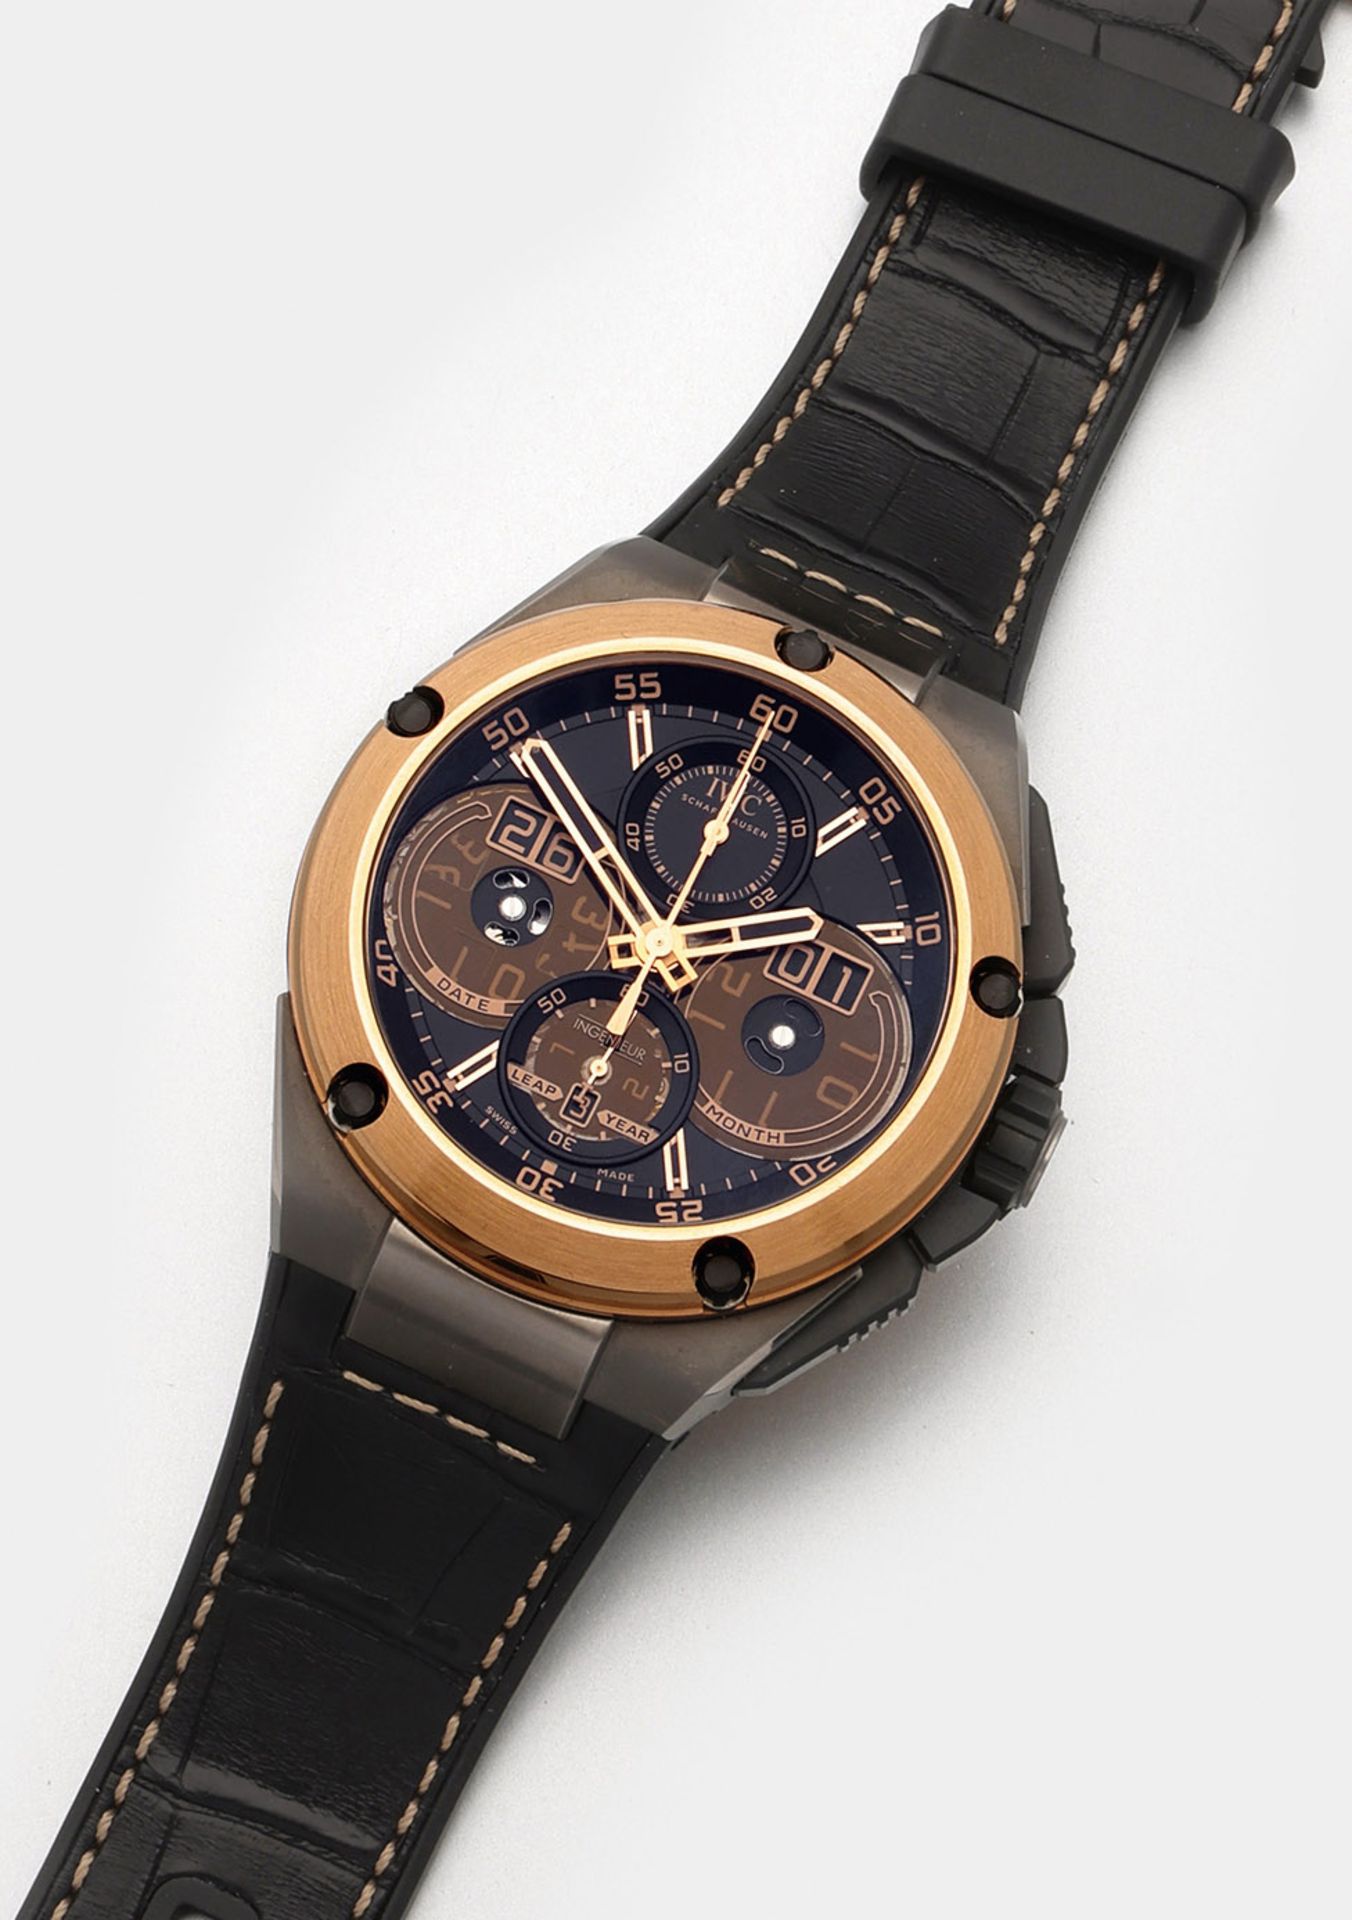 Herren-Armbanduhr von IWC-"Ingenieur" mit ewigem Kalender - Image 2 of 8